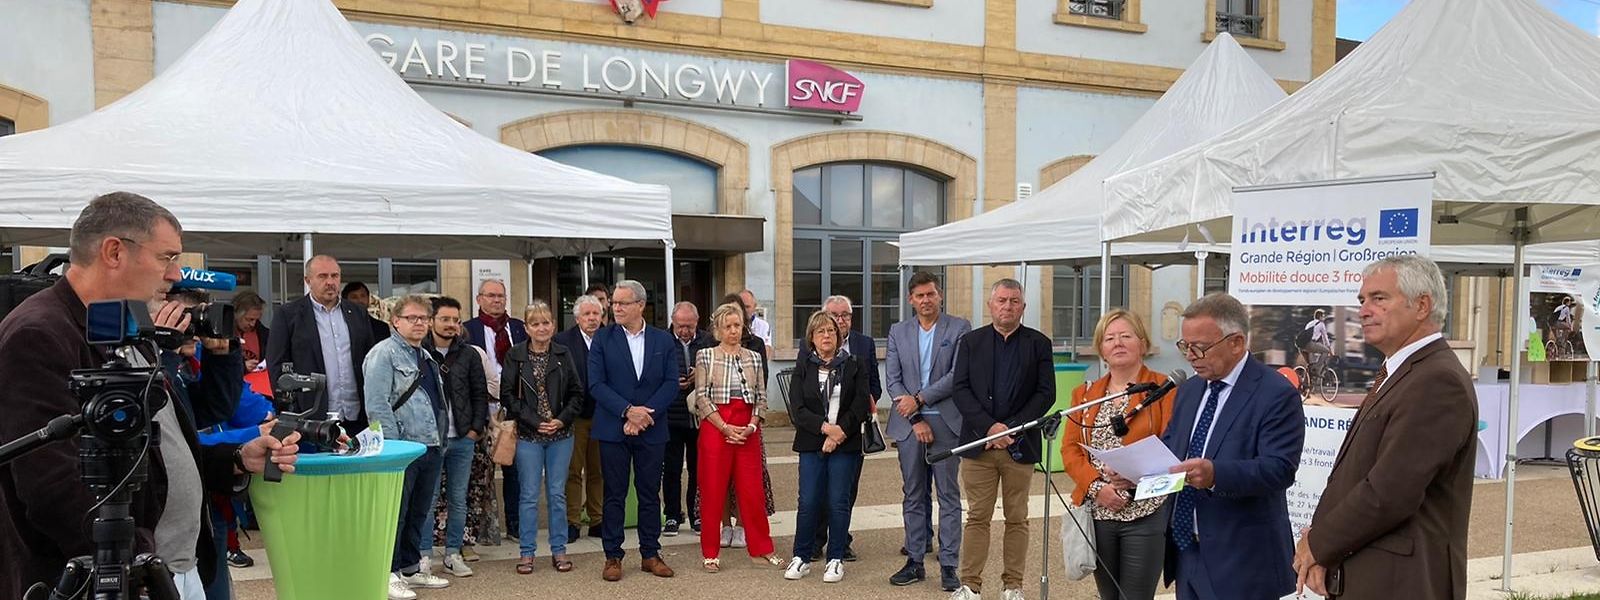 Les partenaires du projet "Mobilité douce 3 Frontières" ce vendredi matin devant la gare de Longwy pour faire la promotion du réseau de 27 km entre trois pays et six gares.